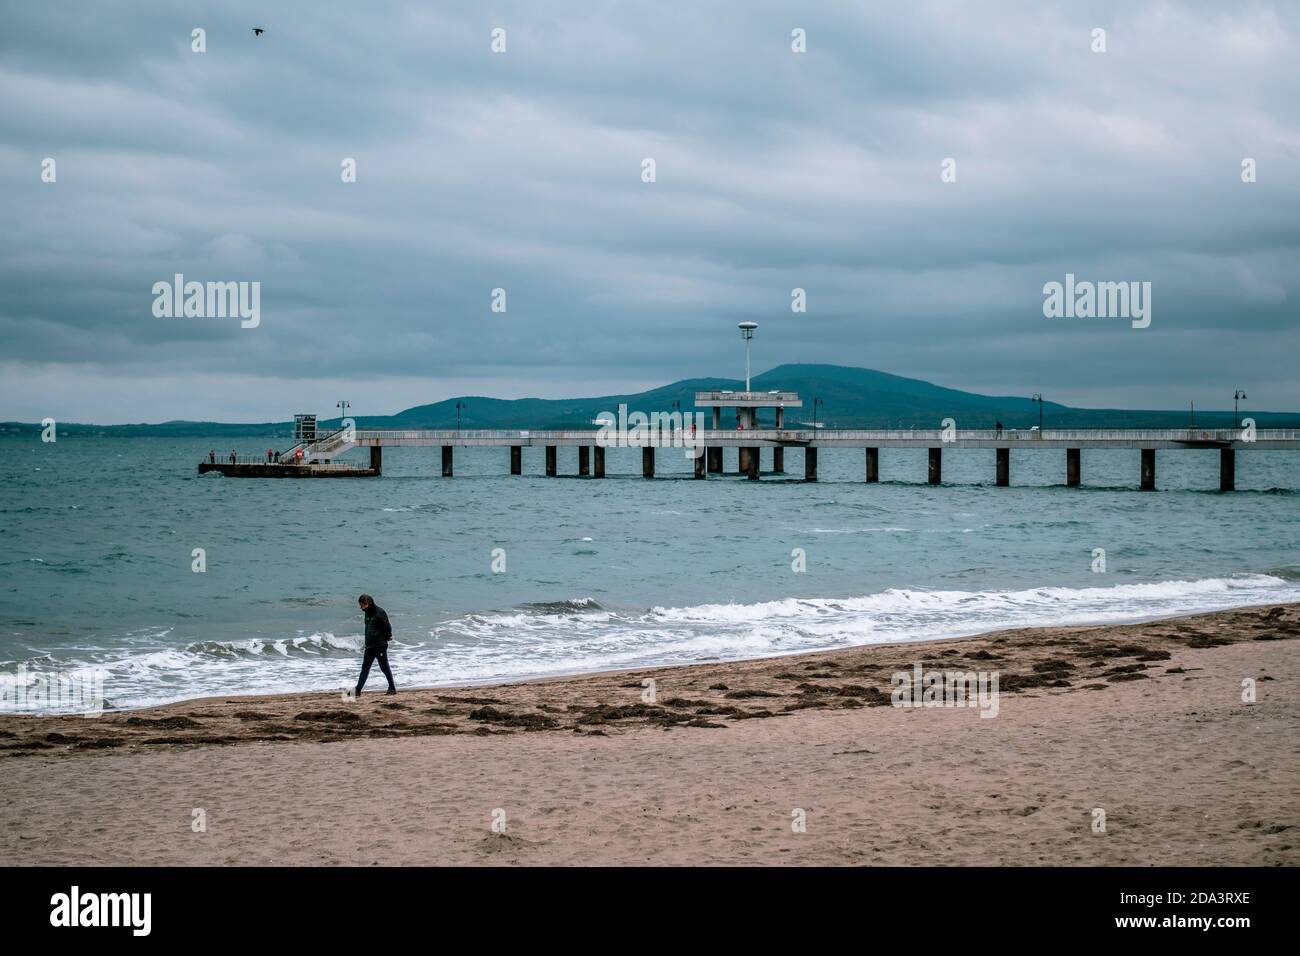 Eine Person, die alleine an einem leeren Strand in Burgas, Bulgarien, läuft. Winter Herbstsaison, kaltes Wetter. Wolkiges Wetter, Seebrücke im Hintergrund. Hohes q Stockfoto